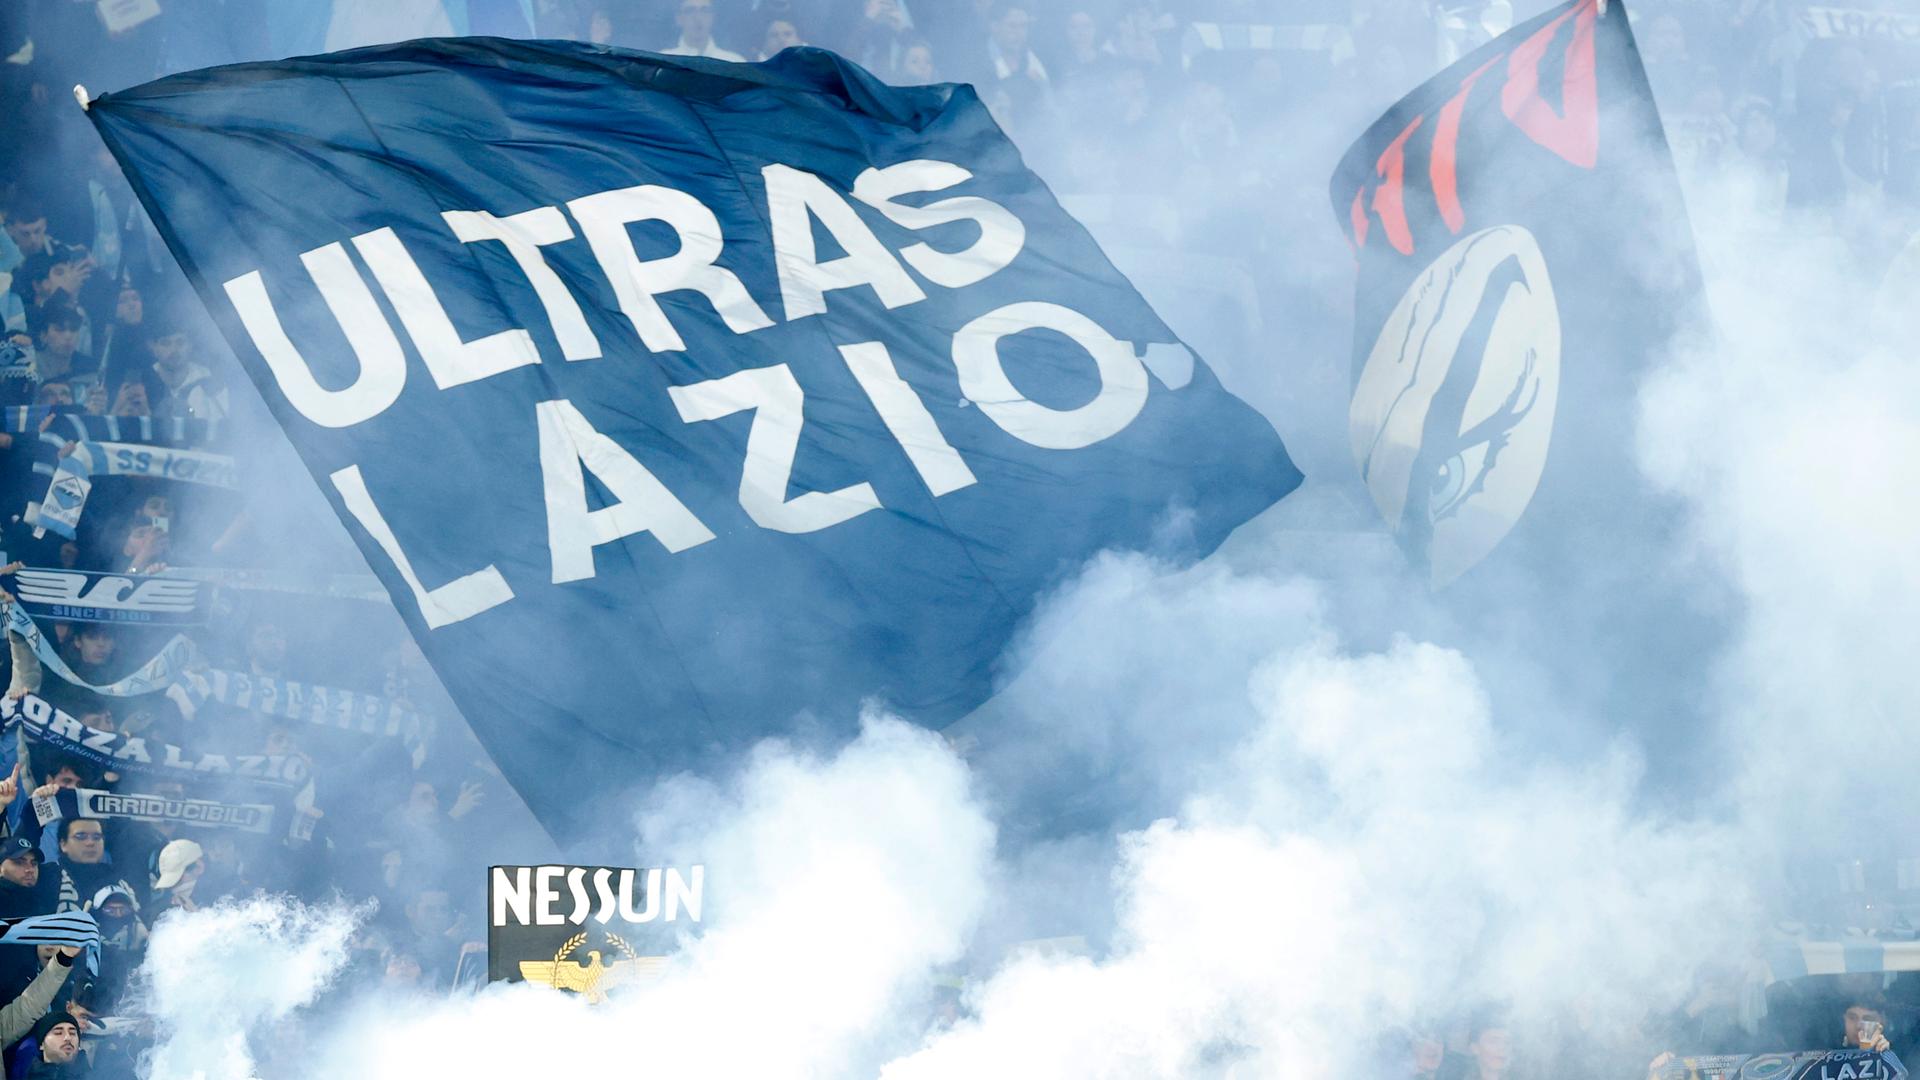 Ein von Pyro-Nebel eingehüllter Stadionrang, auf dem eine große Fahne mit der Aufschrift "Ultras Lazio" geschwenkt wird